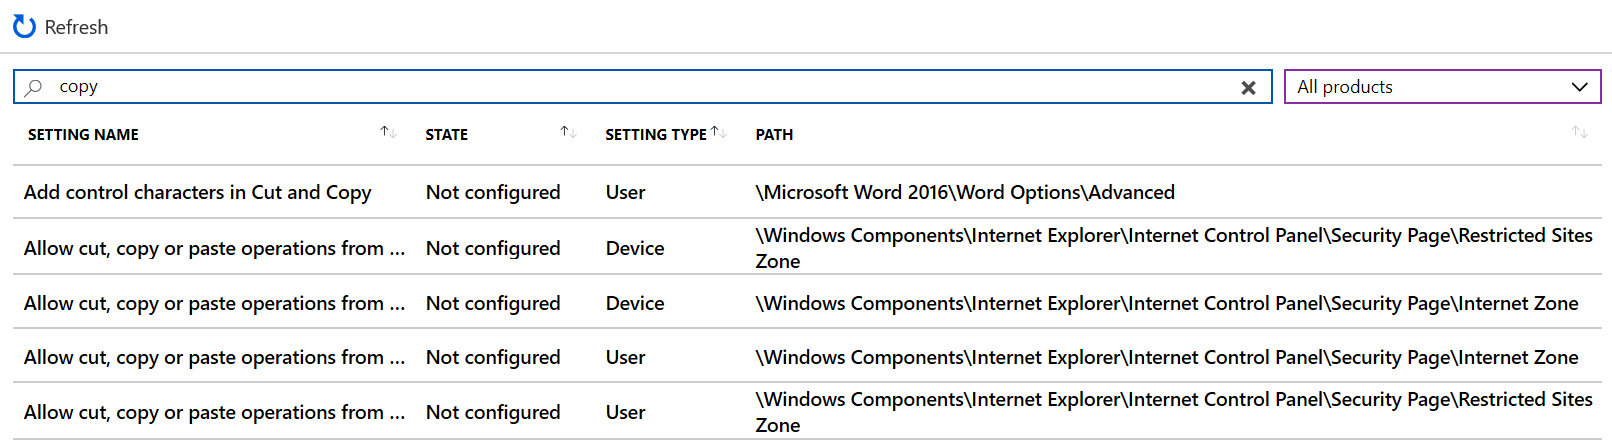 Search pro kopírování zobrazí všechna nastavení zařízení v šablonách pro správu v centru pro správu Microsoft Intune a Intune.